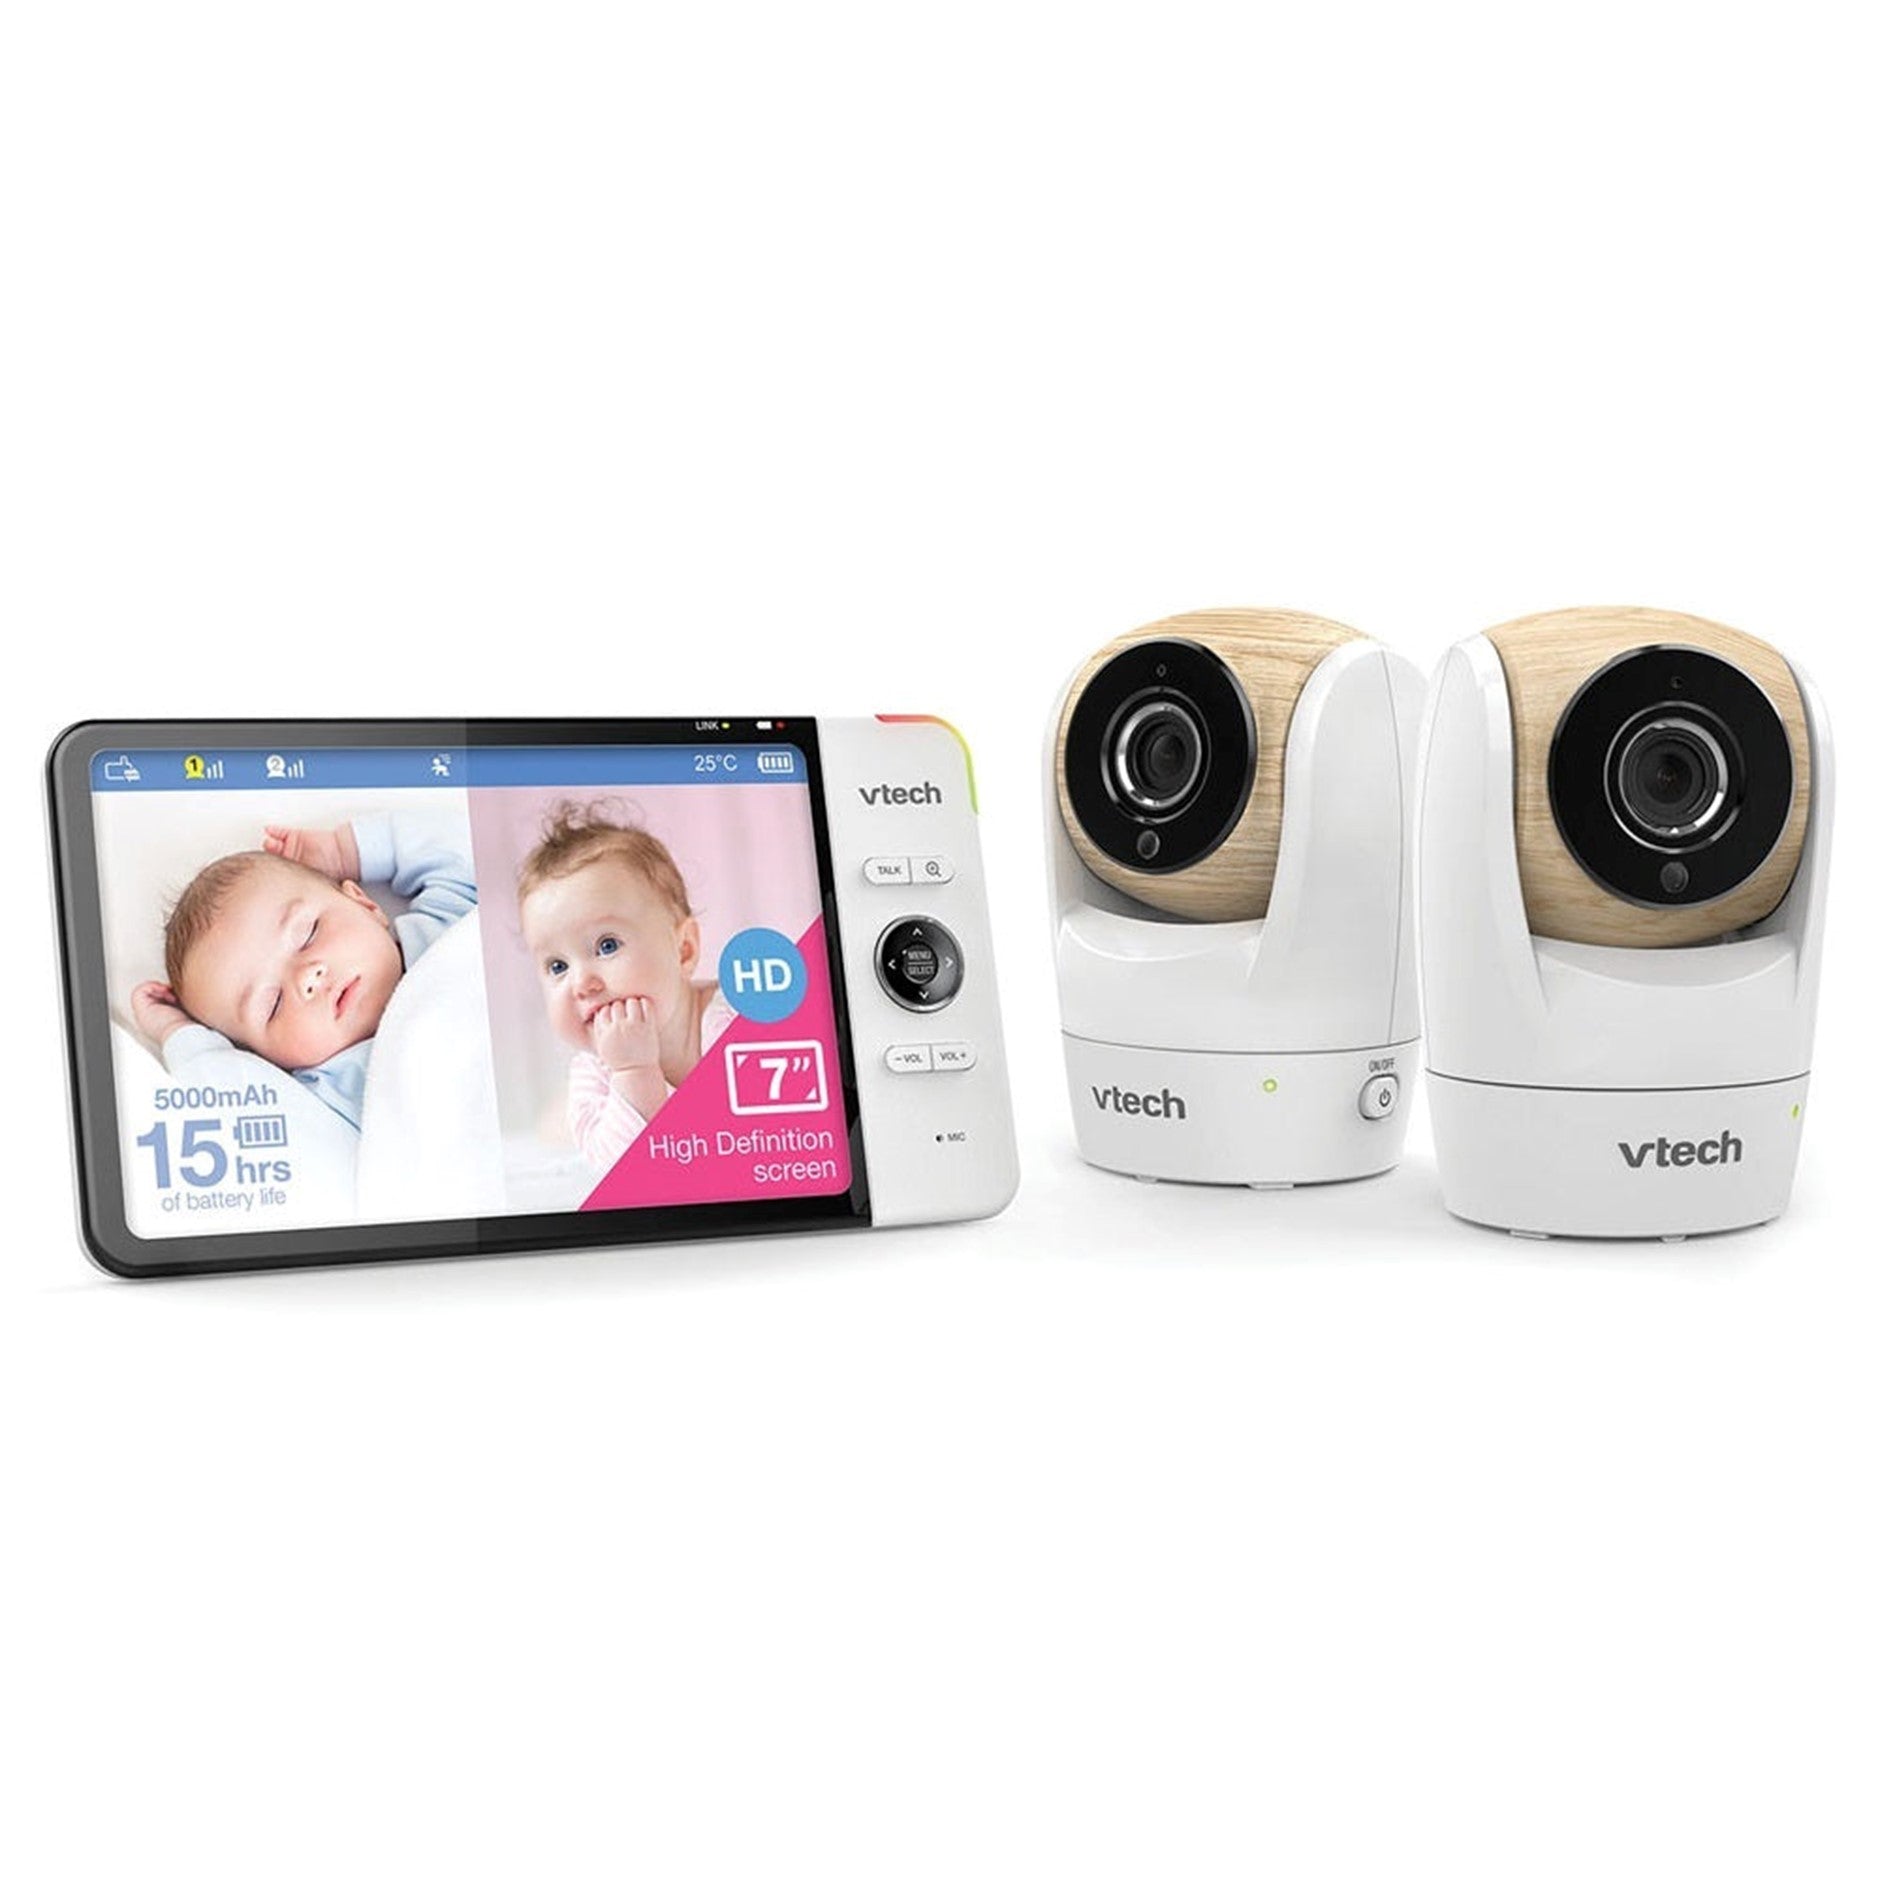 vtech BM7750HD Pan & Tilt Video & Audio Baby Monitor - 2 Camera pack –  babygoodswarehouse